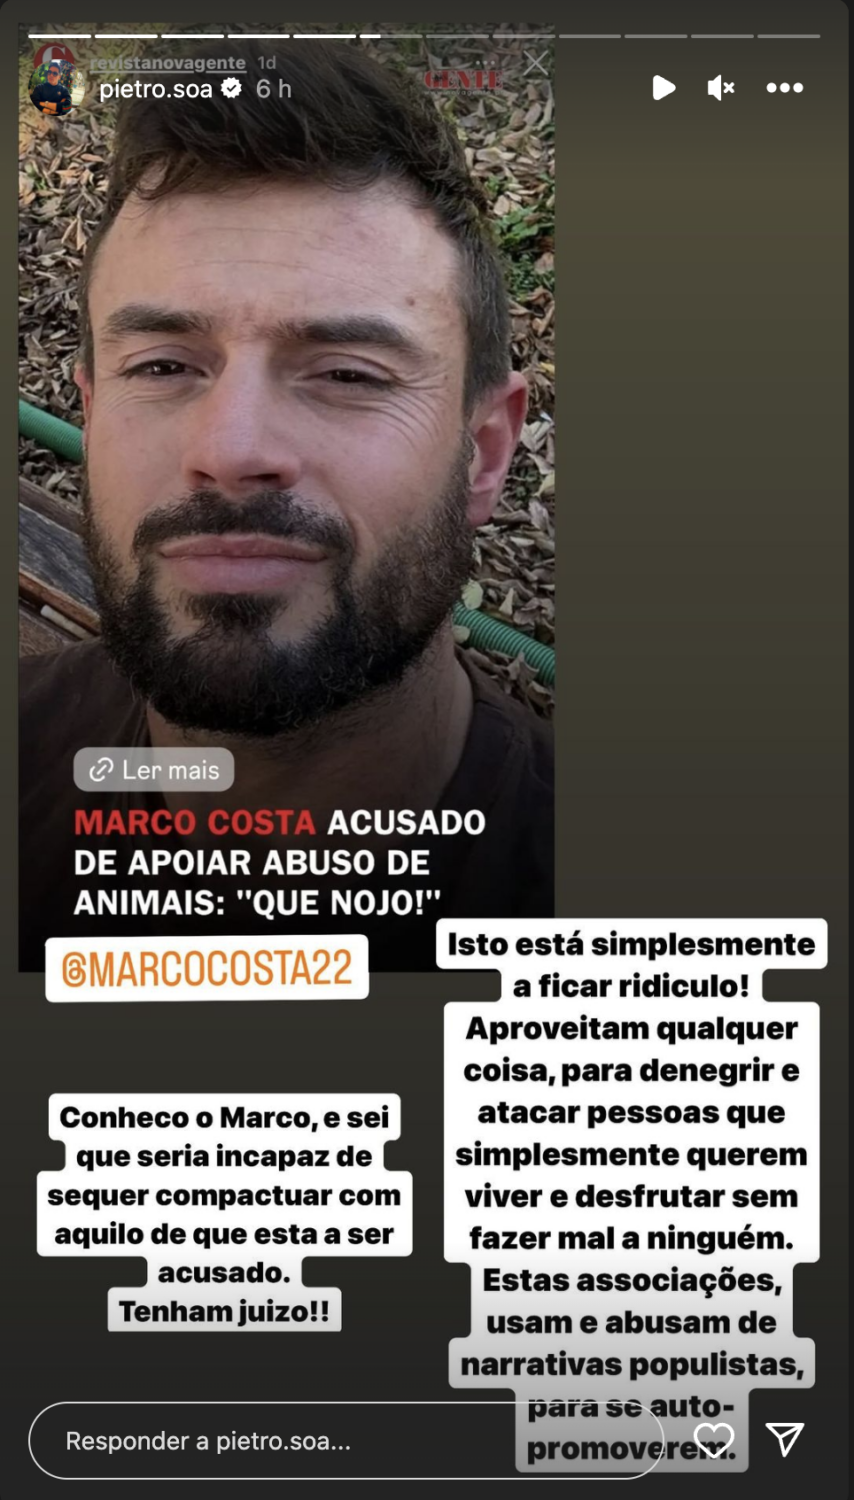 Pedro Soá sai em defesa de Marco Costa após &#8216;polémica&#8217;: &#8220;Isto está a ficar ridículo&#8230;&#8221;